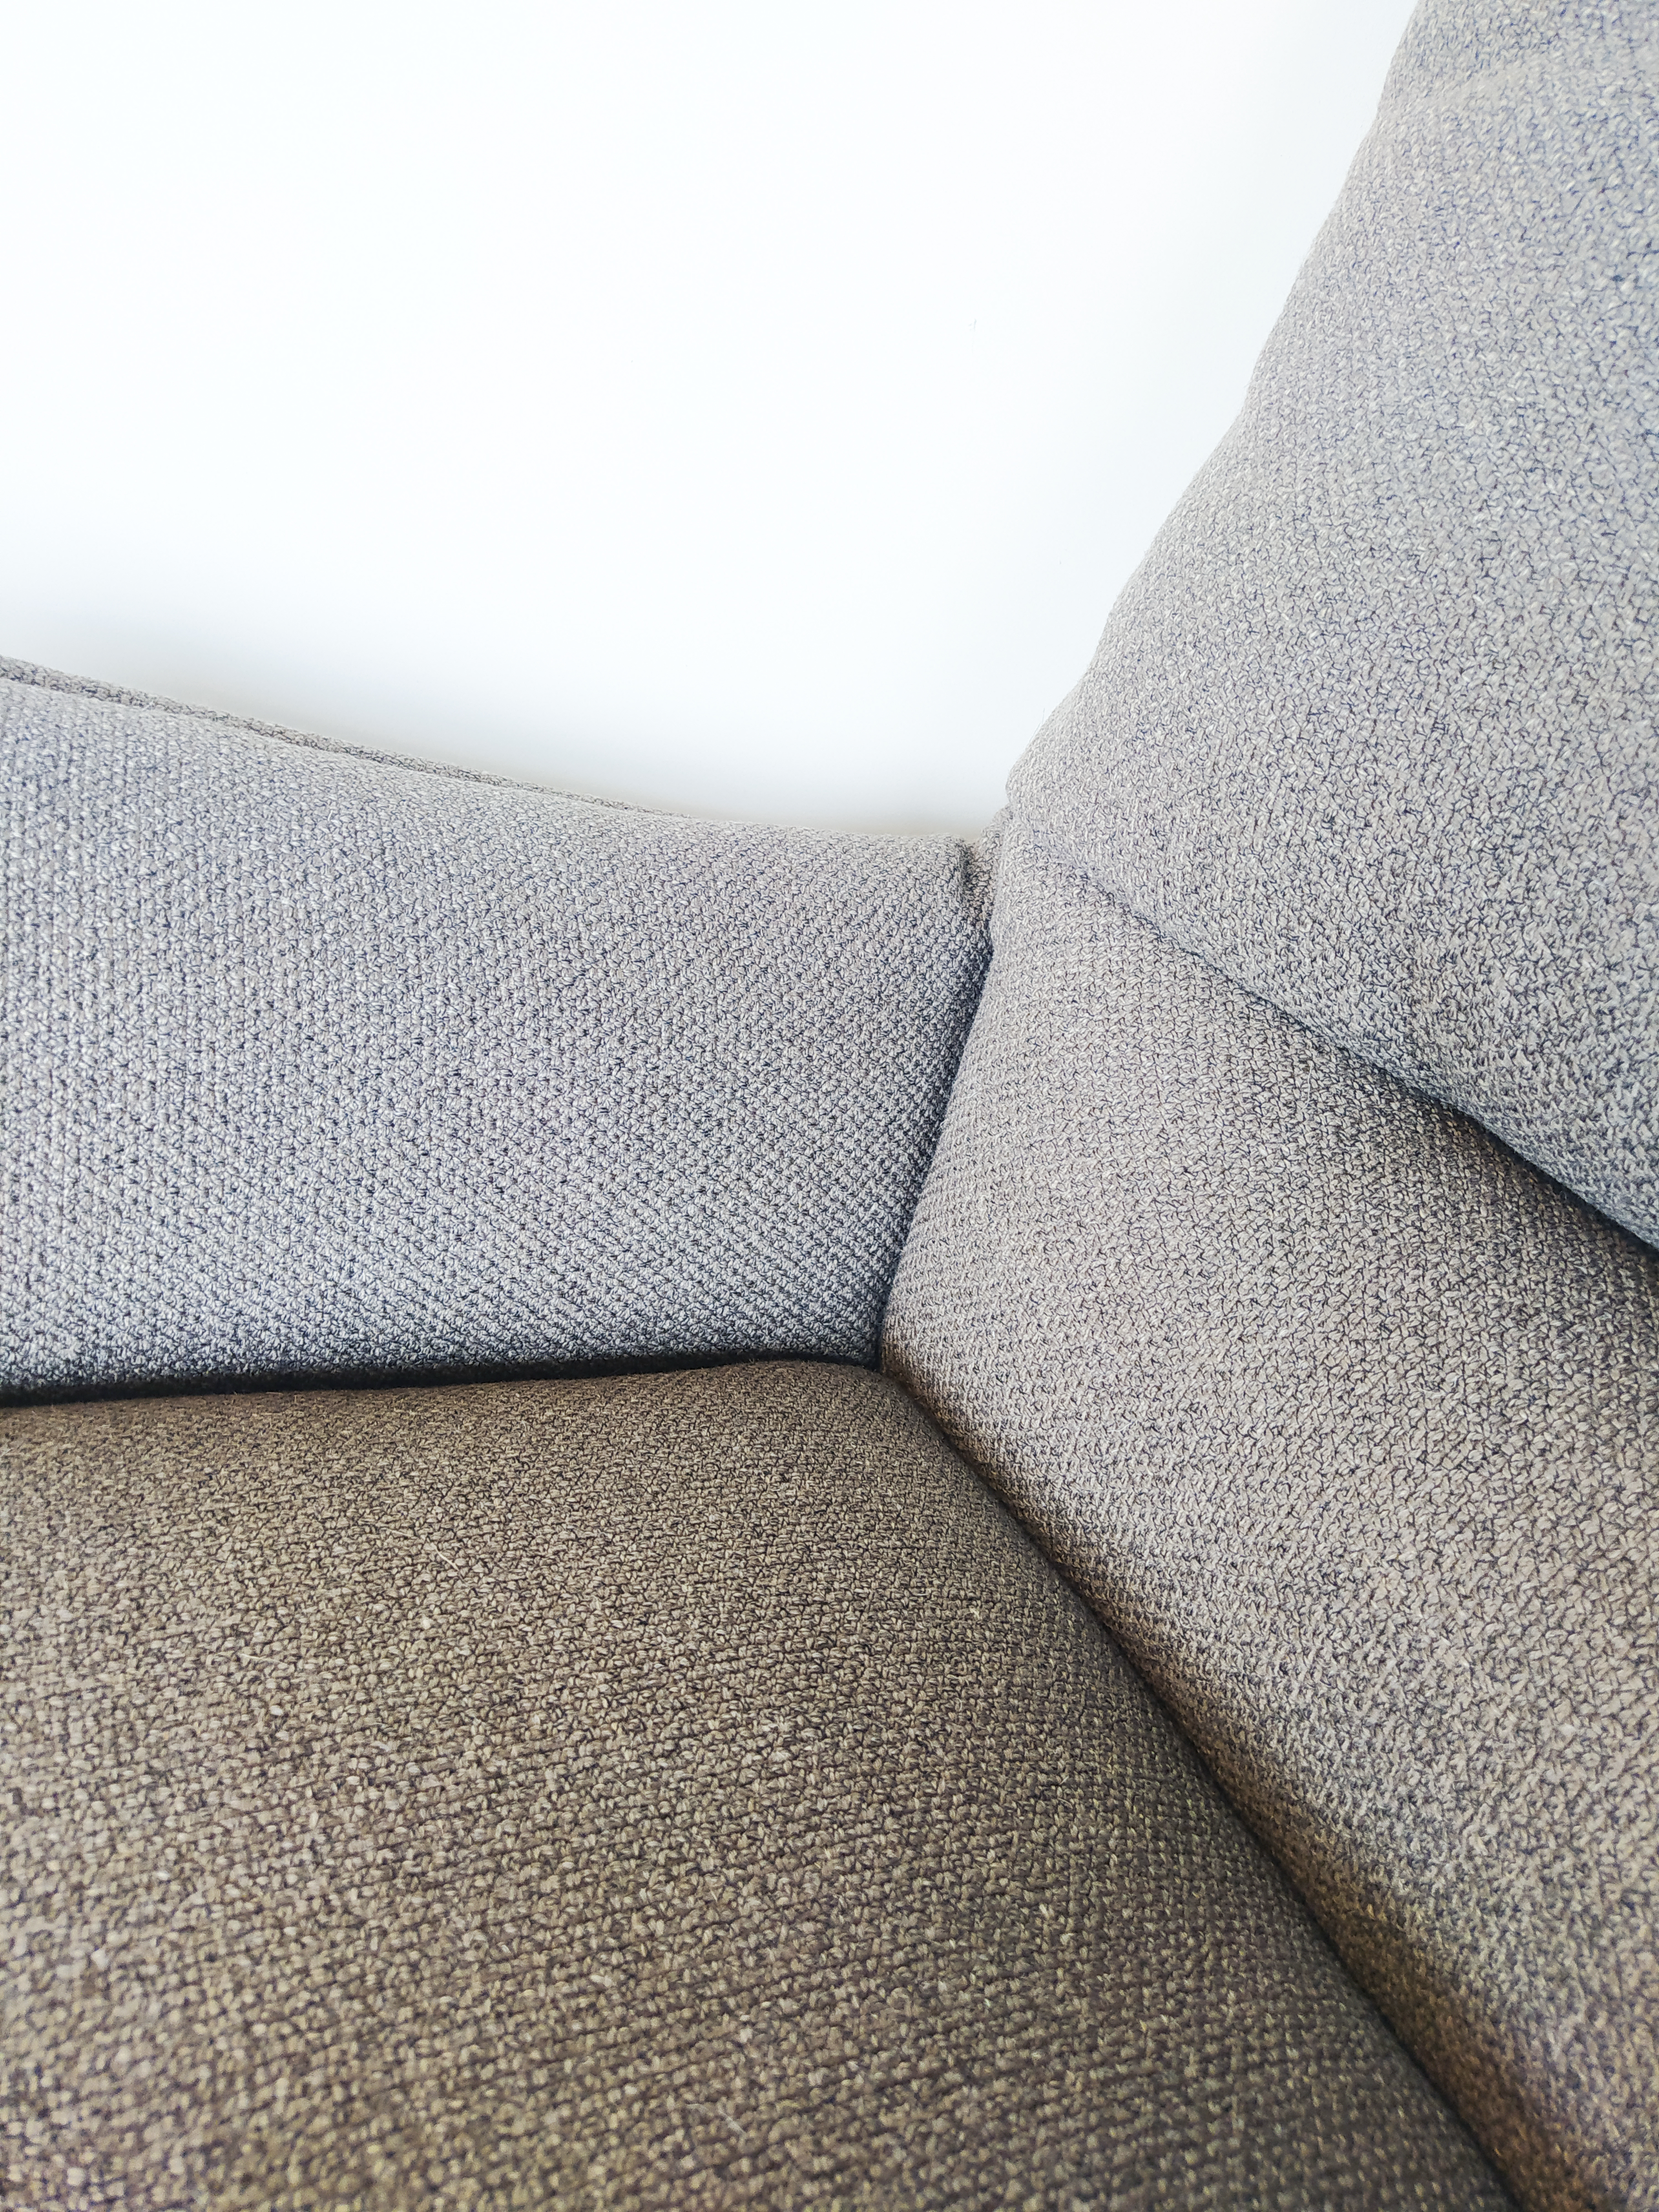 Evolution-hasselt-interieurwinkel-meubelen-design-stof-fauteuil-otto-detail